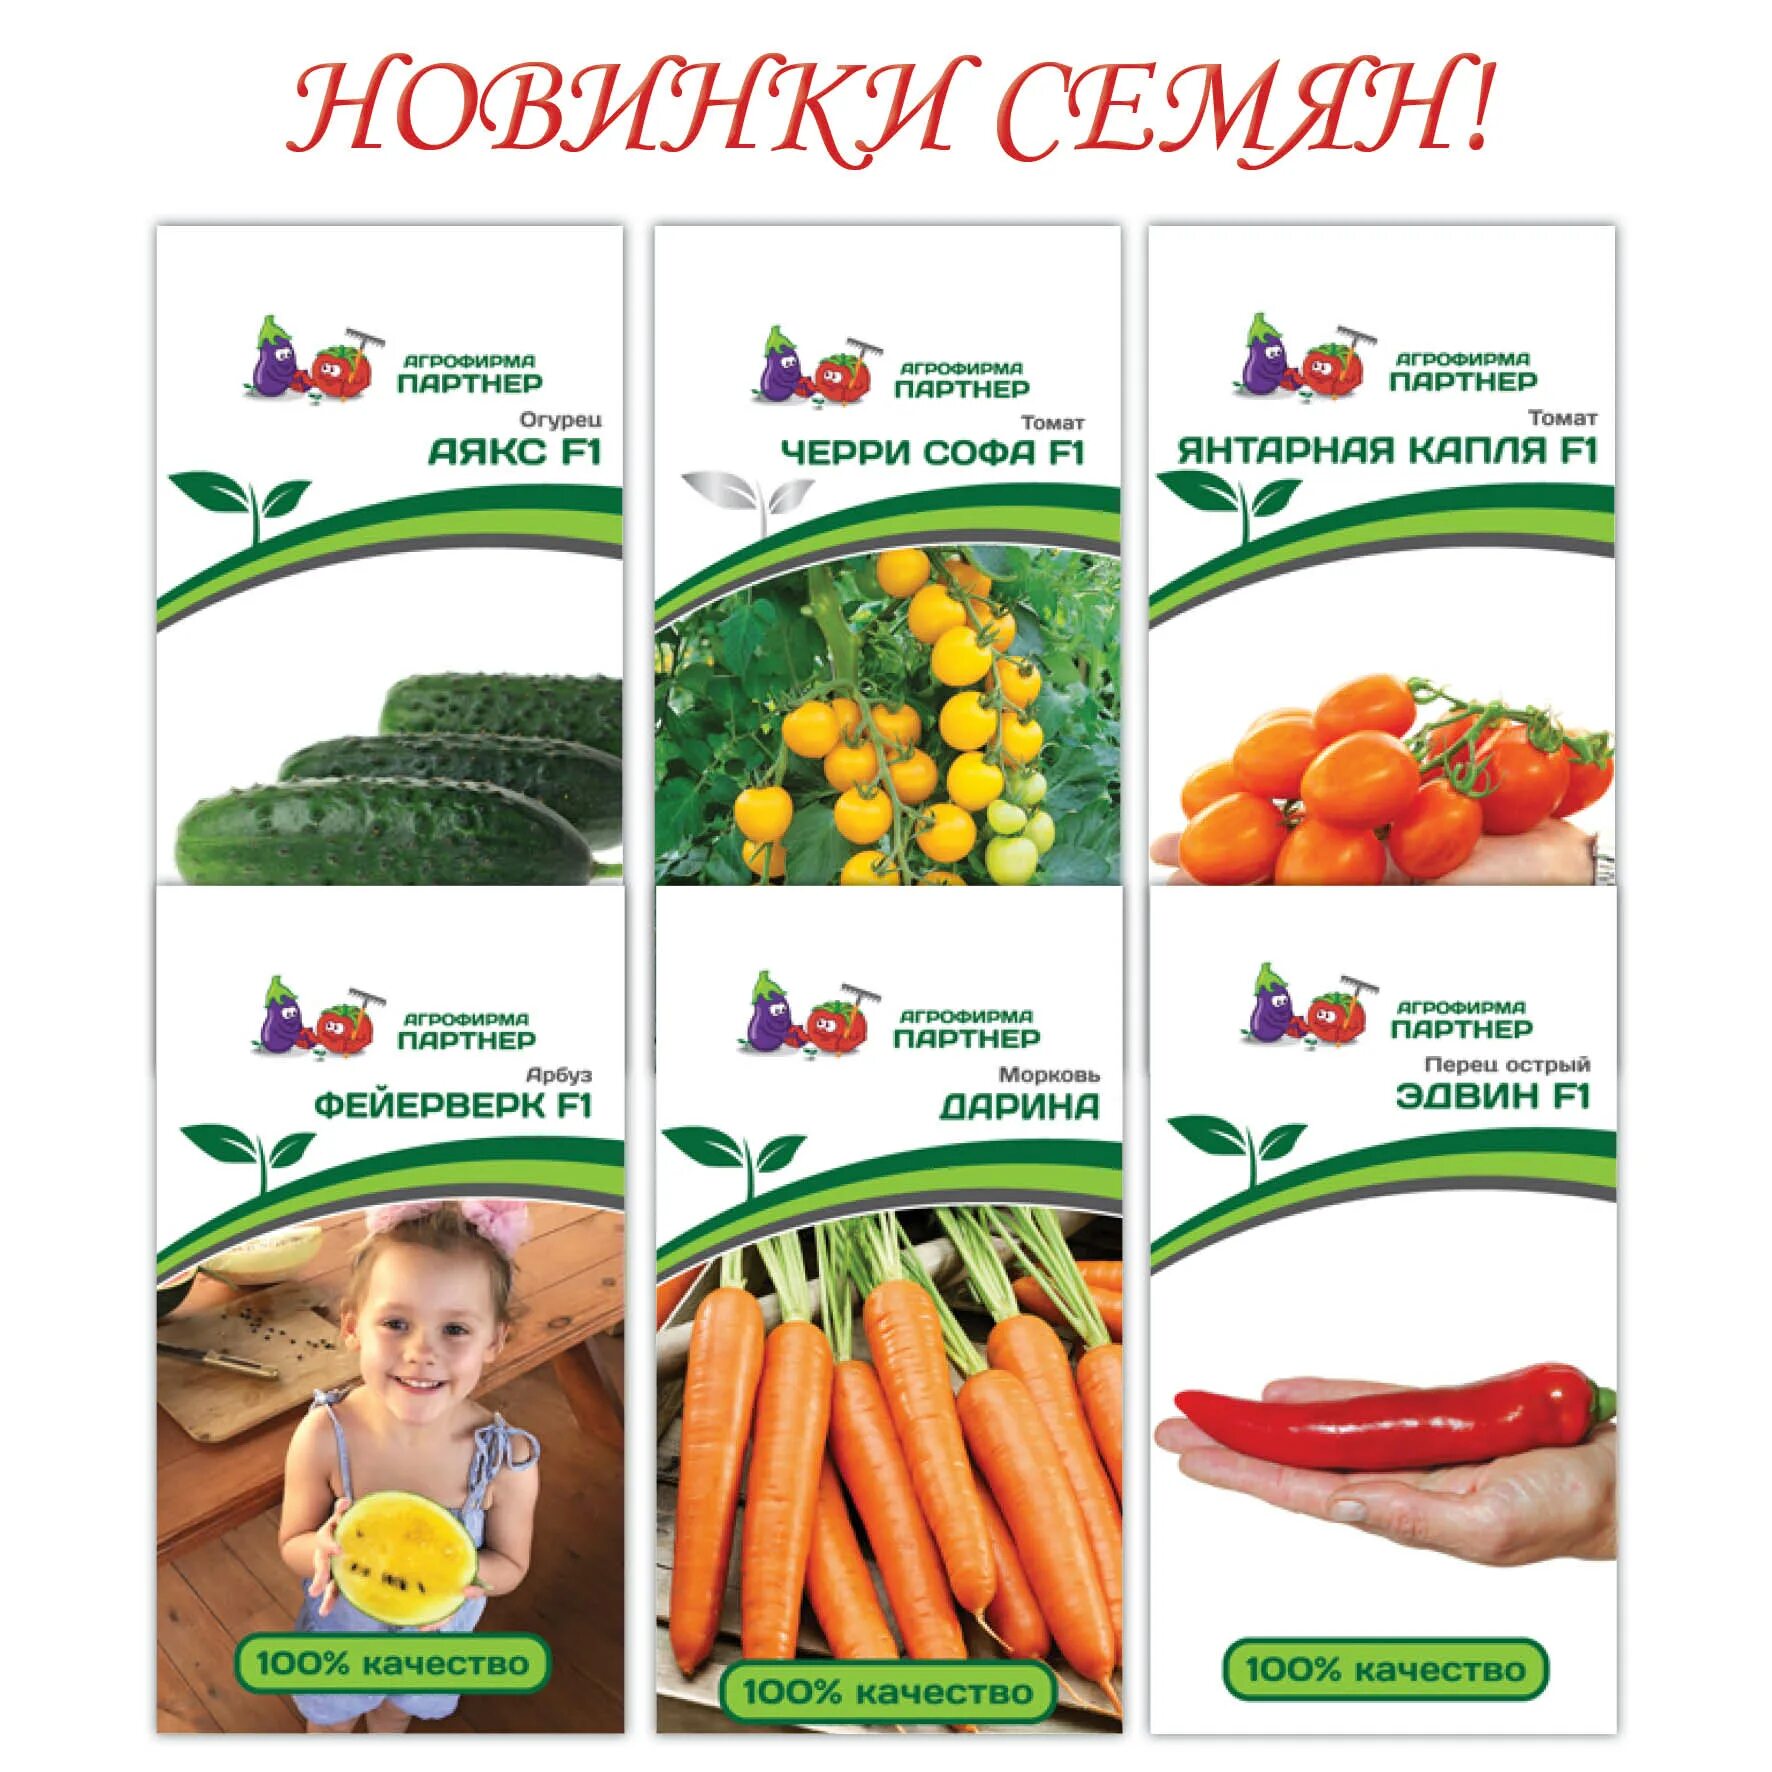 Интернет магазин семян доставка по россии. Семена томат Агрофирма Семко. Семена Семко каталог 2021. Семена фирмы партнер. Семена овощей от партнера.